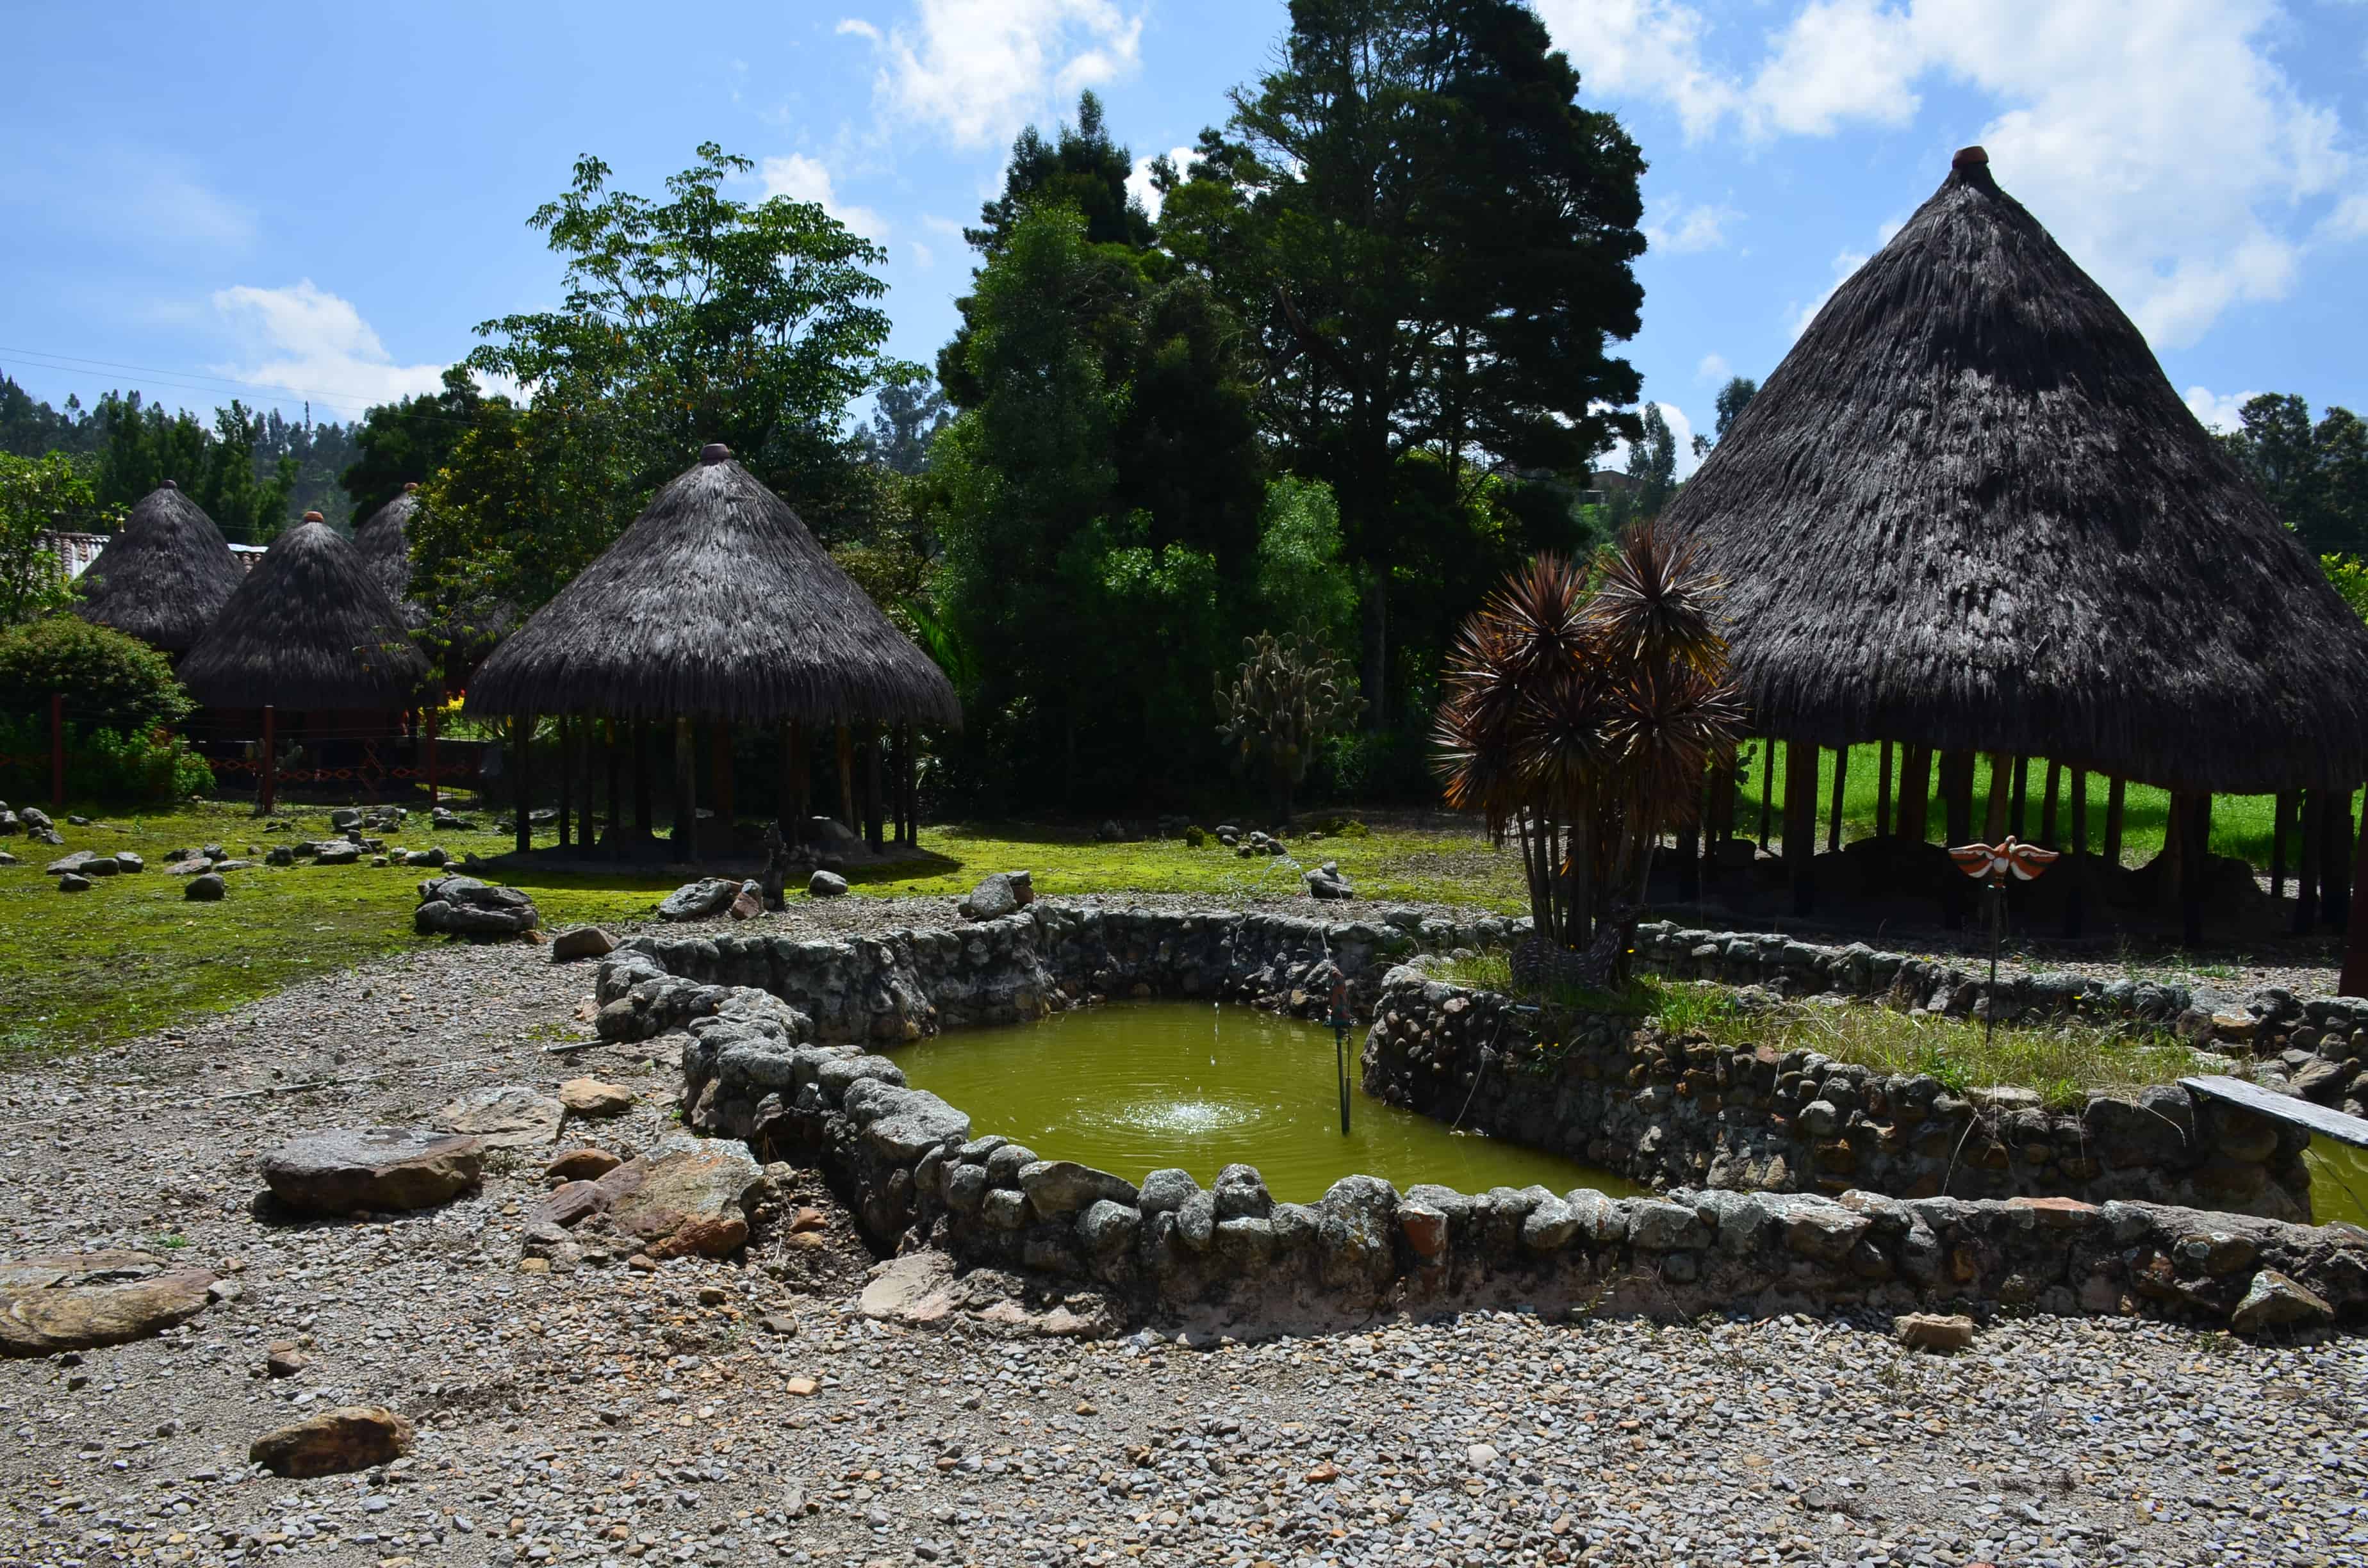 The grounds at Museo Arqueológico de Sogamoso in Sogamoso, Boyacá, Colombia